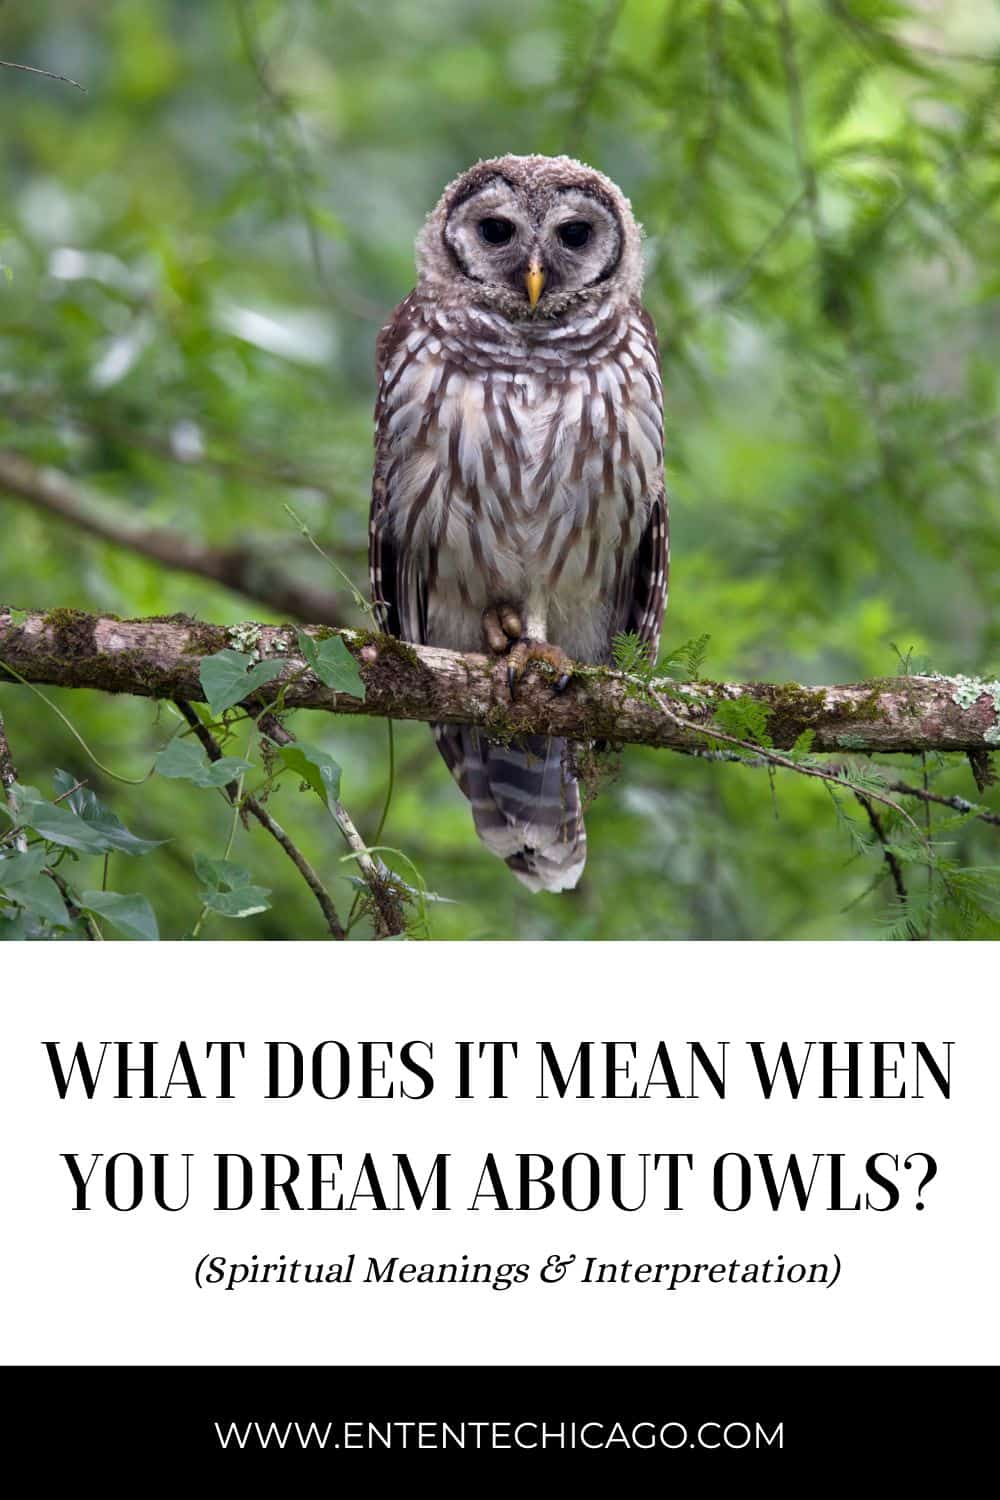 Co oznaczają sowy we śnie?